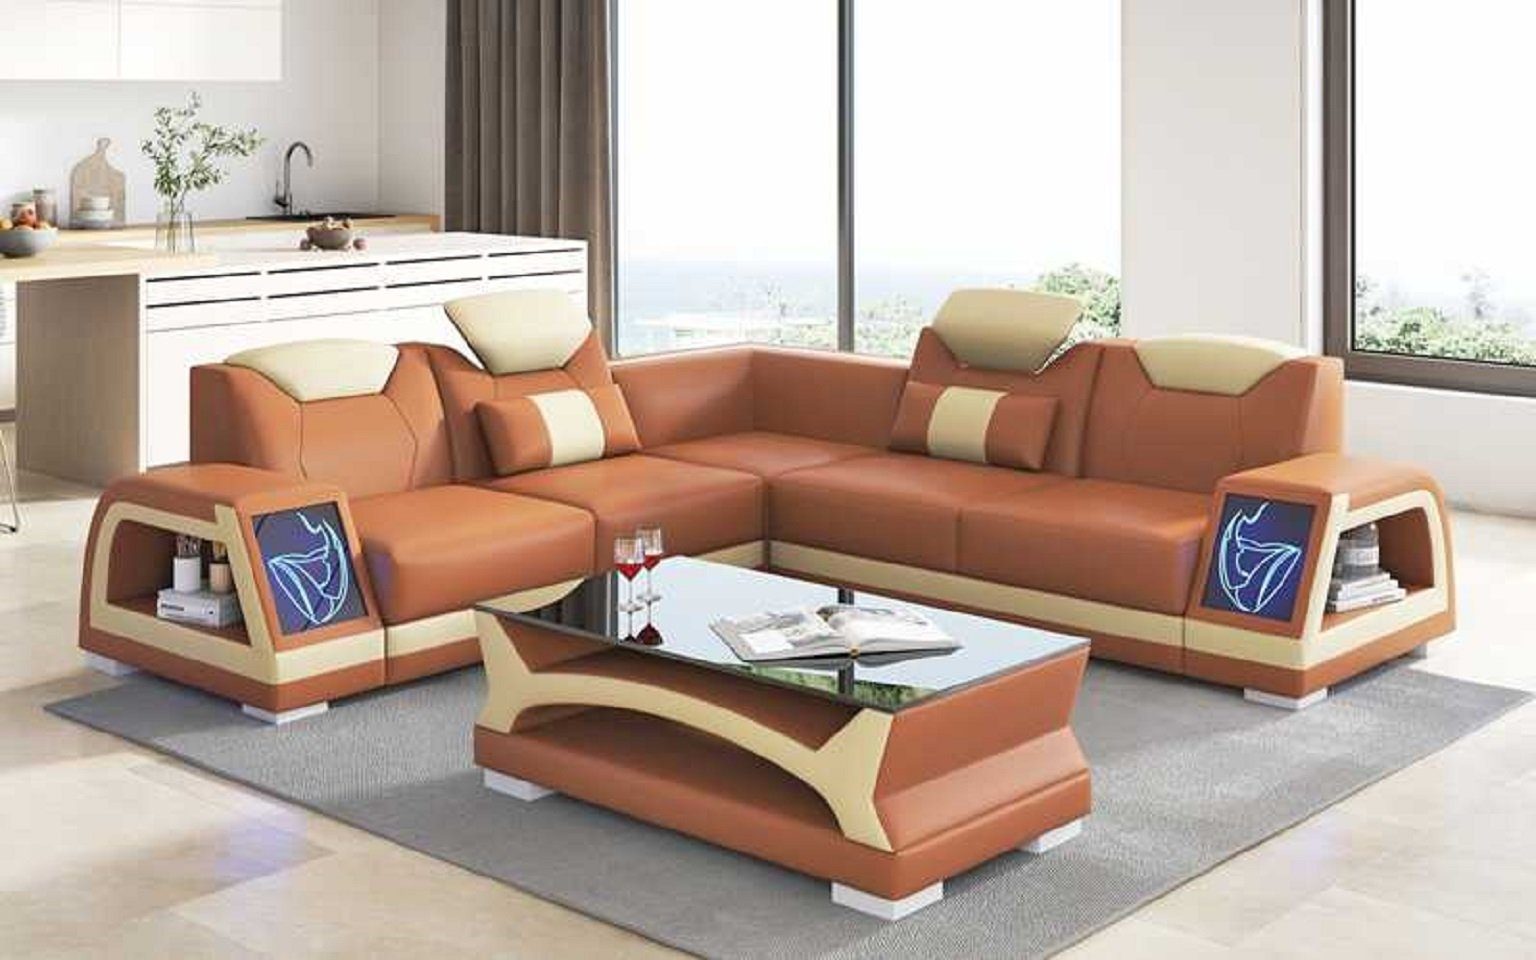 JVmoebel Ecksofa Modern Ecksofa L Form Kunstleder Sofa Couch Luxus Design Couchen, 3 Teile, Made in Europe Braun